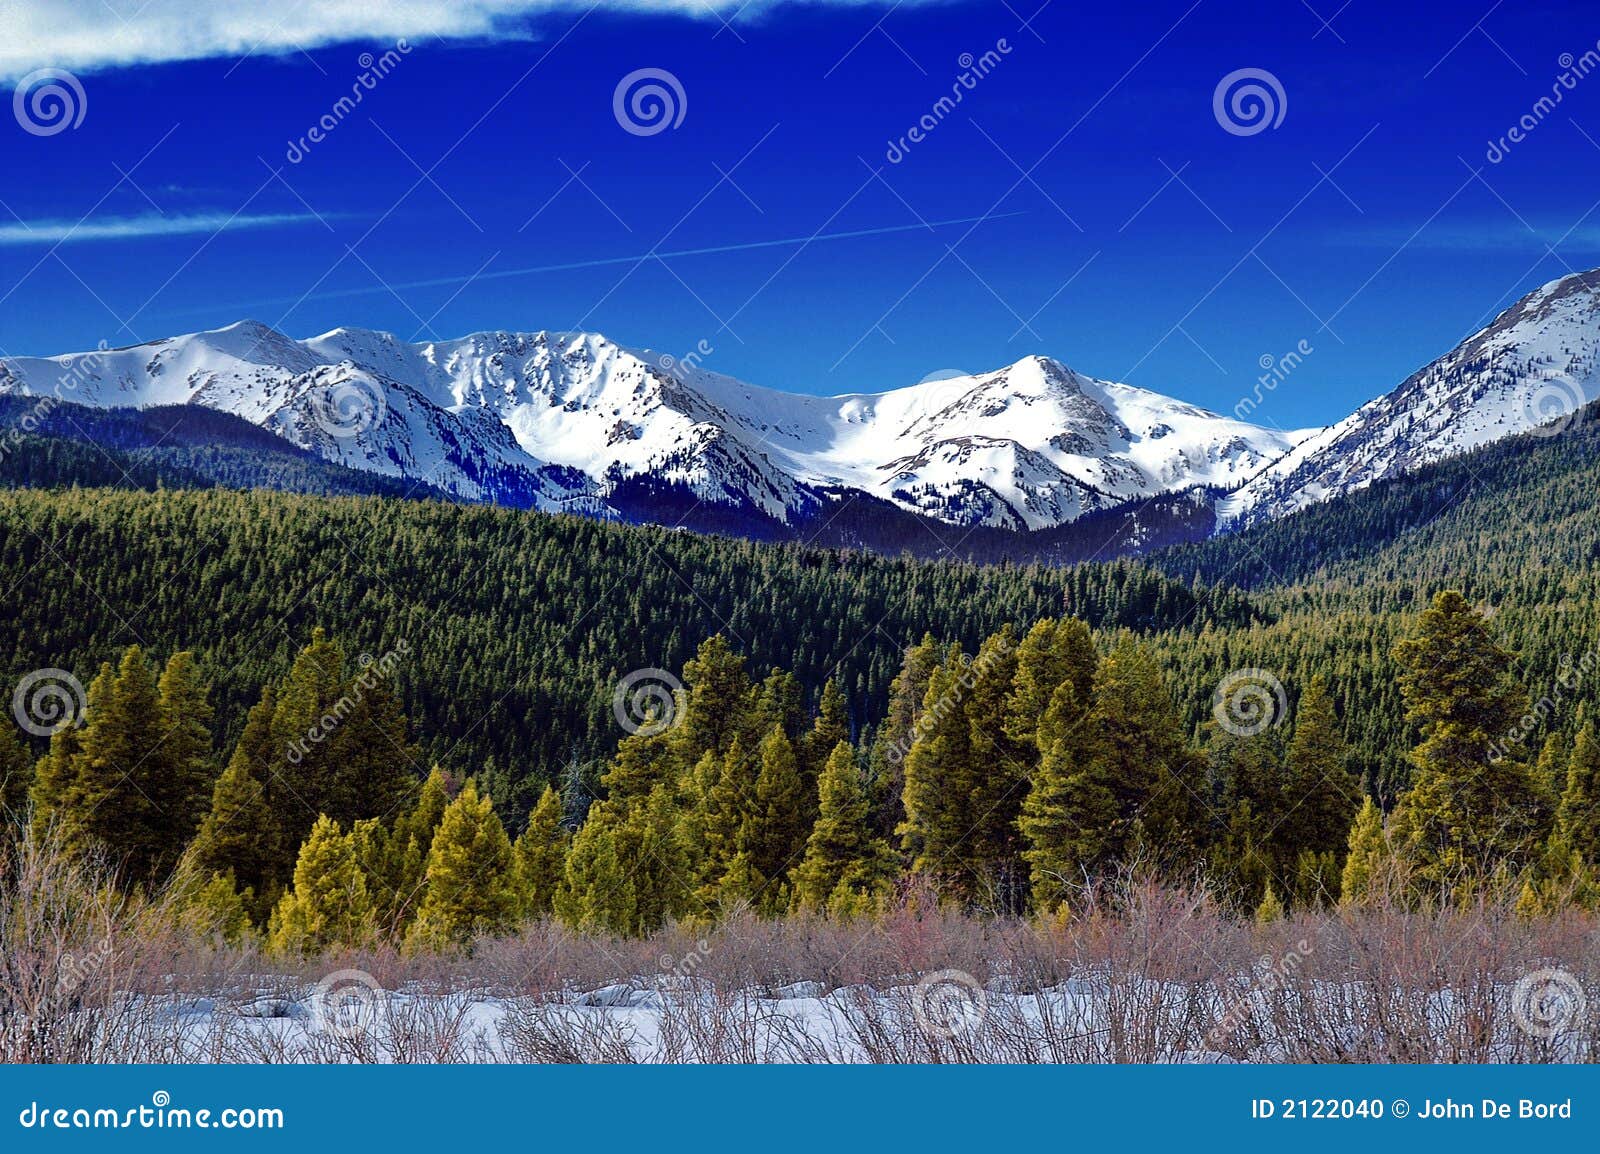 colorado winter landscape